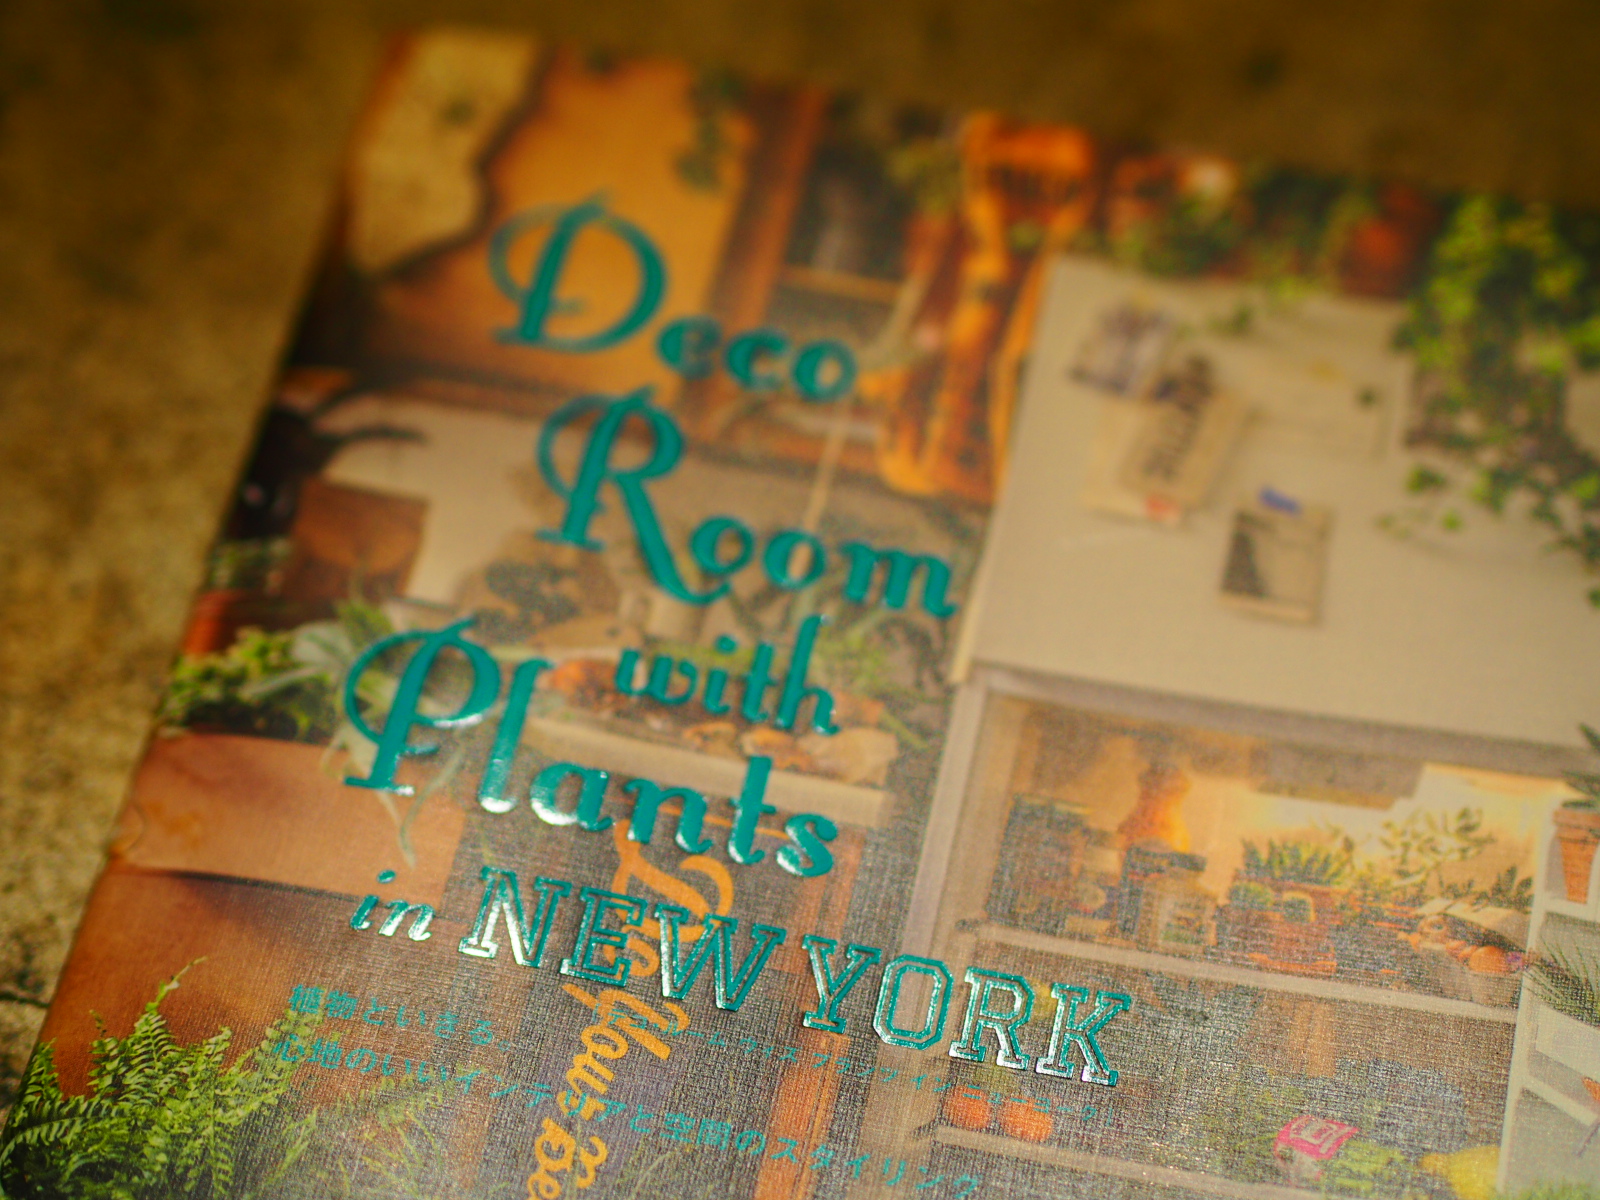 「Deco Room with Plants in NEW YORK」春に向けて部屋を変えたいひとにおすすめの本